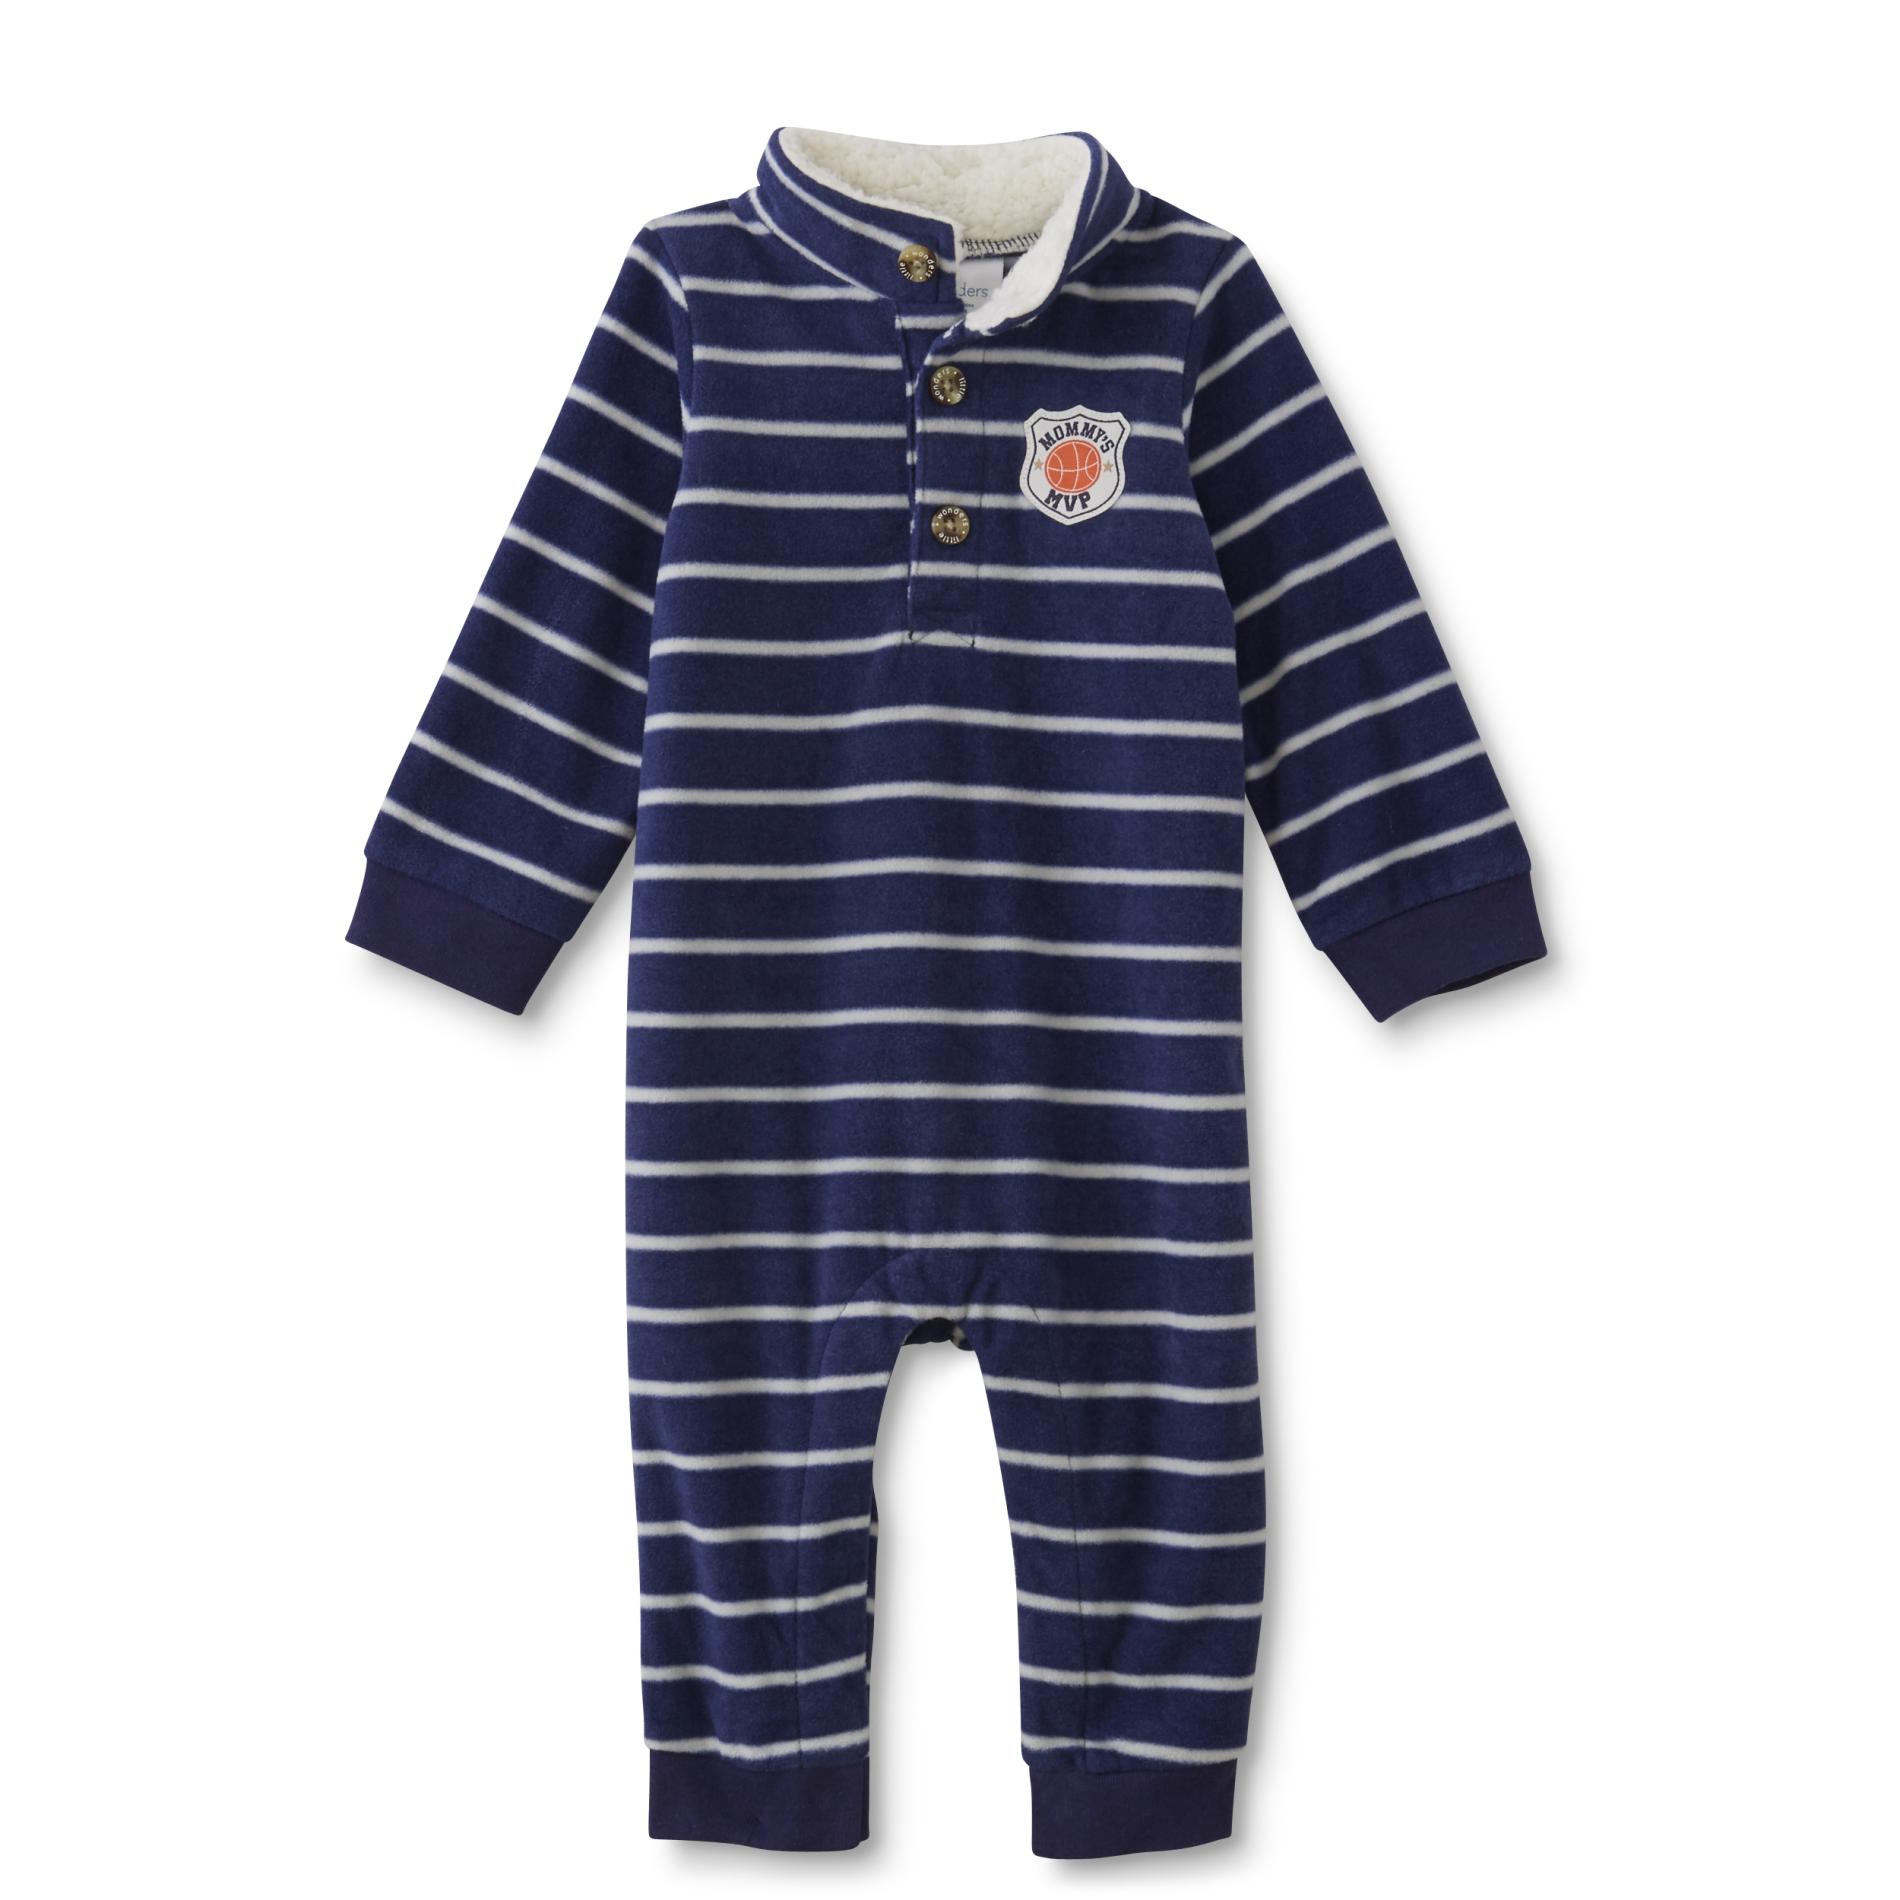 Little Wonders Newborn & Infant Boys' Fleece Jumpsuit - Striped